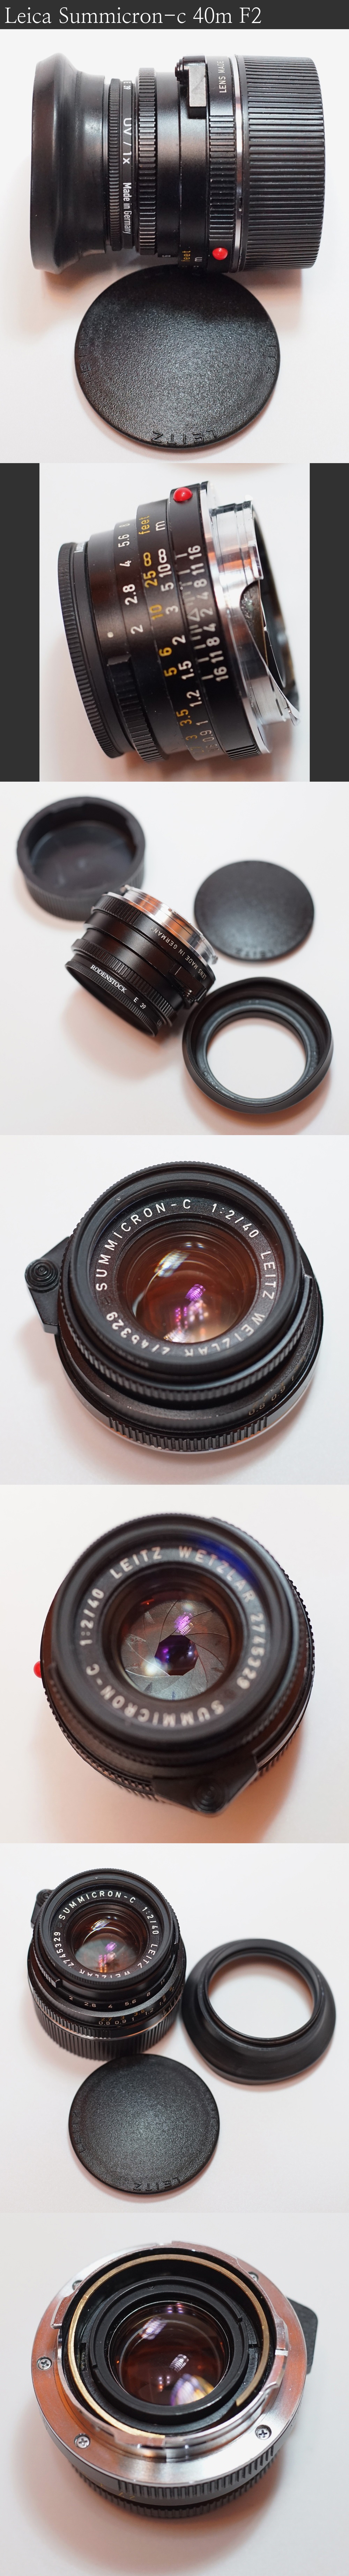 라이카(Leica) Summicron-c 40mm F2,Elmar-c 90mm F4,보이그랜더(Voigtlander) Bessa-T Photo-Image